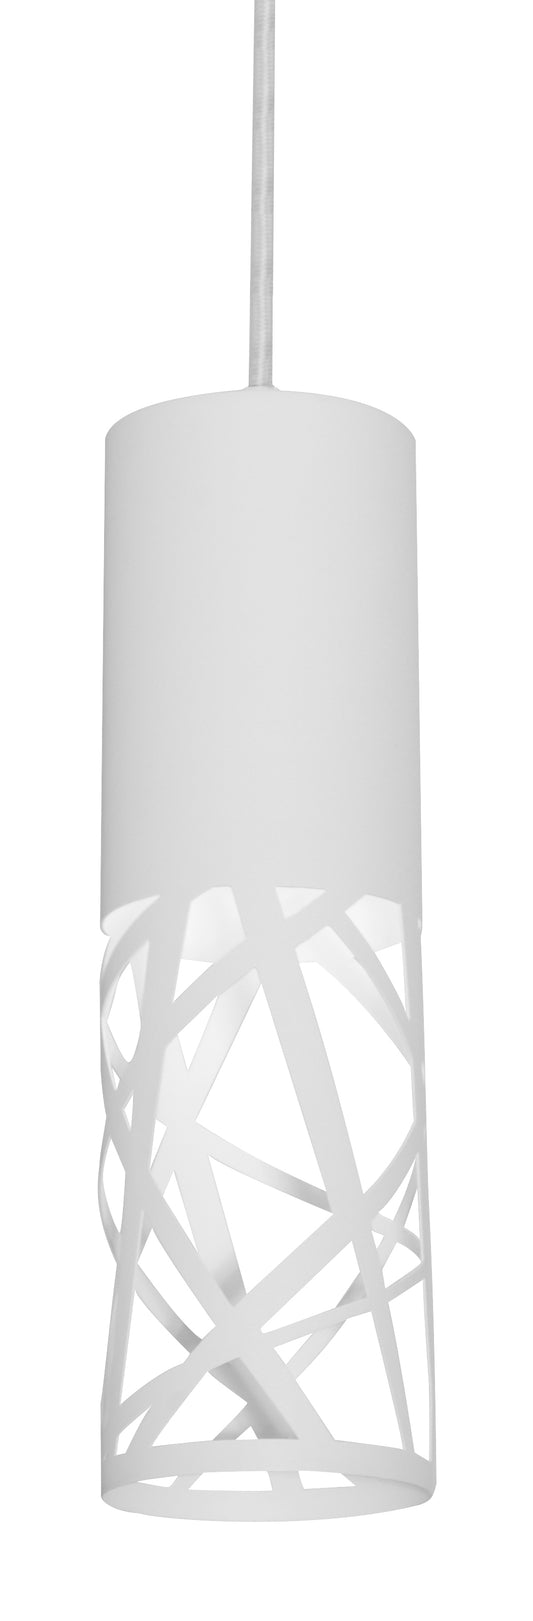 AFX Inc. BONP0407L30D2WH Boon LED 6 inch White Pendant Ceiling Light